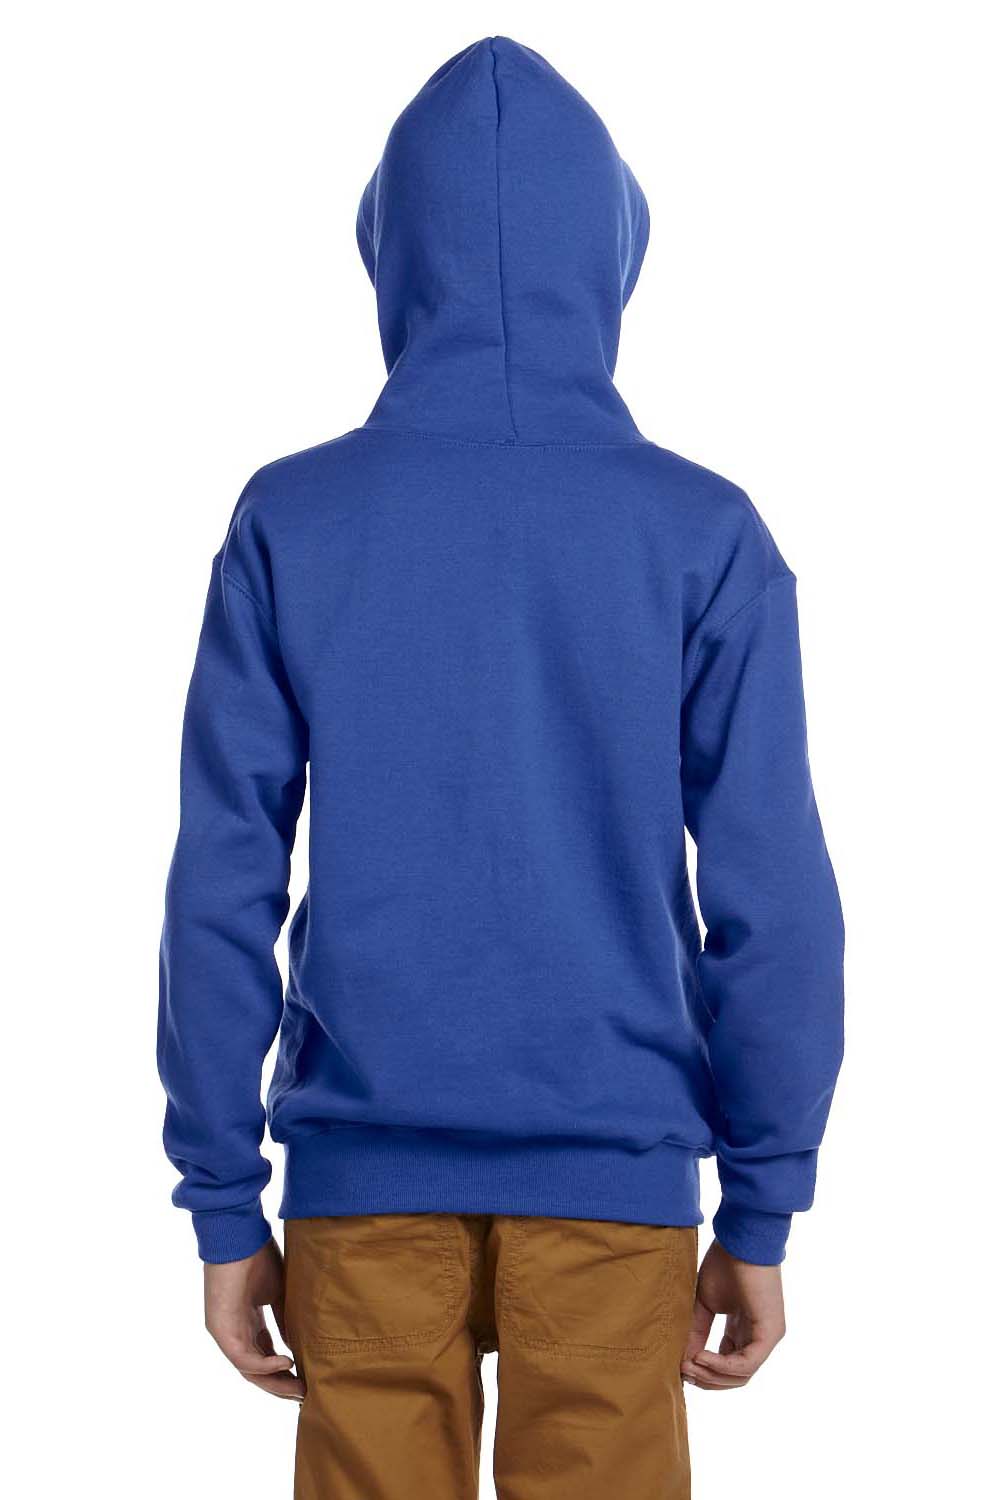 Jerzees 993B Youth NuBlend Fleece Full Zip Hooded Sweatshirt Hoodie Royal Blue Back